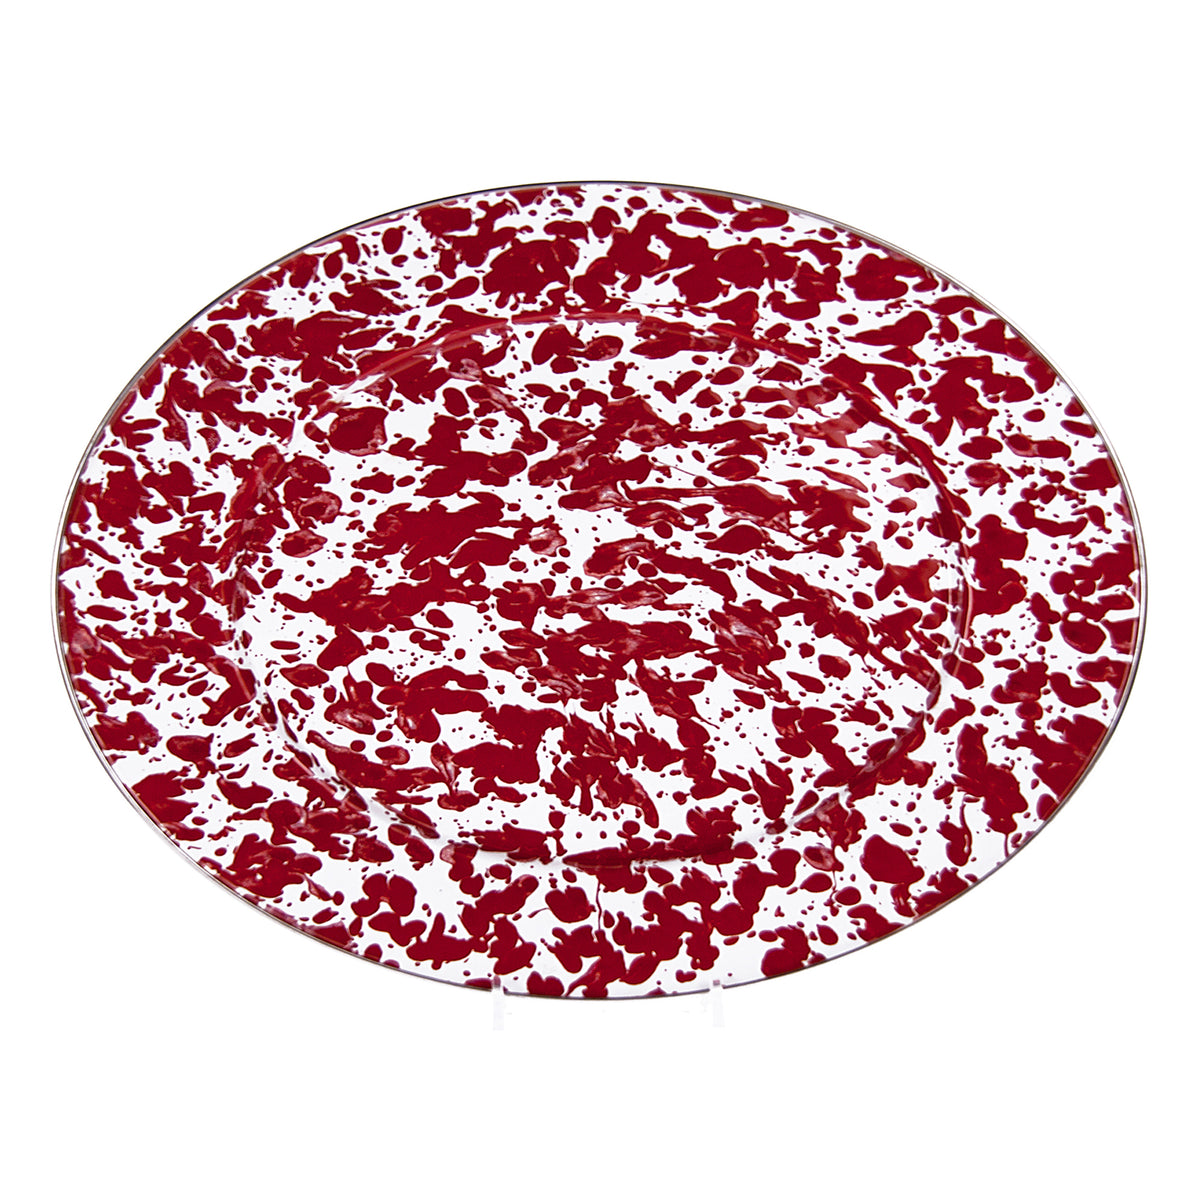 Oval Platter in in Red Swirl